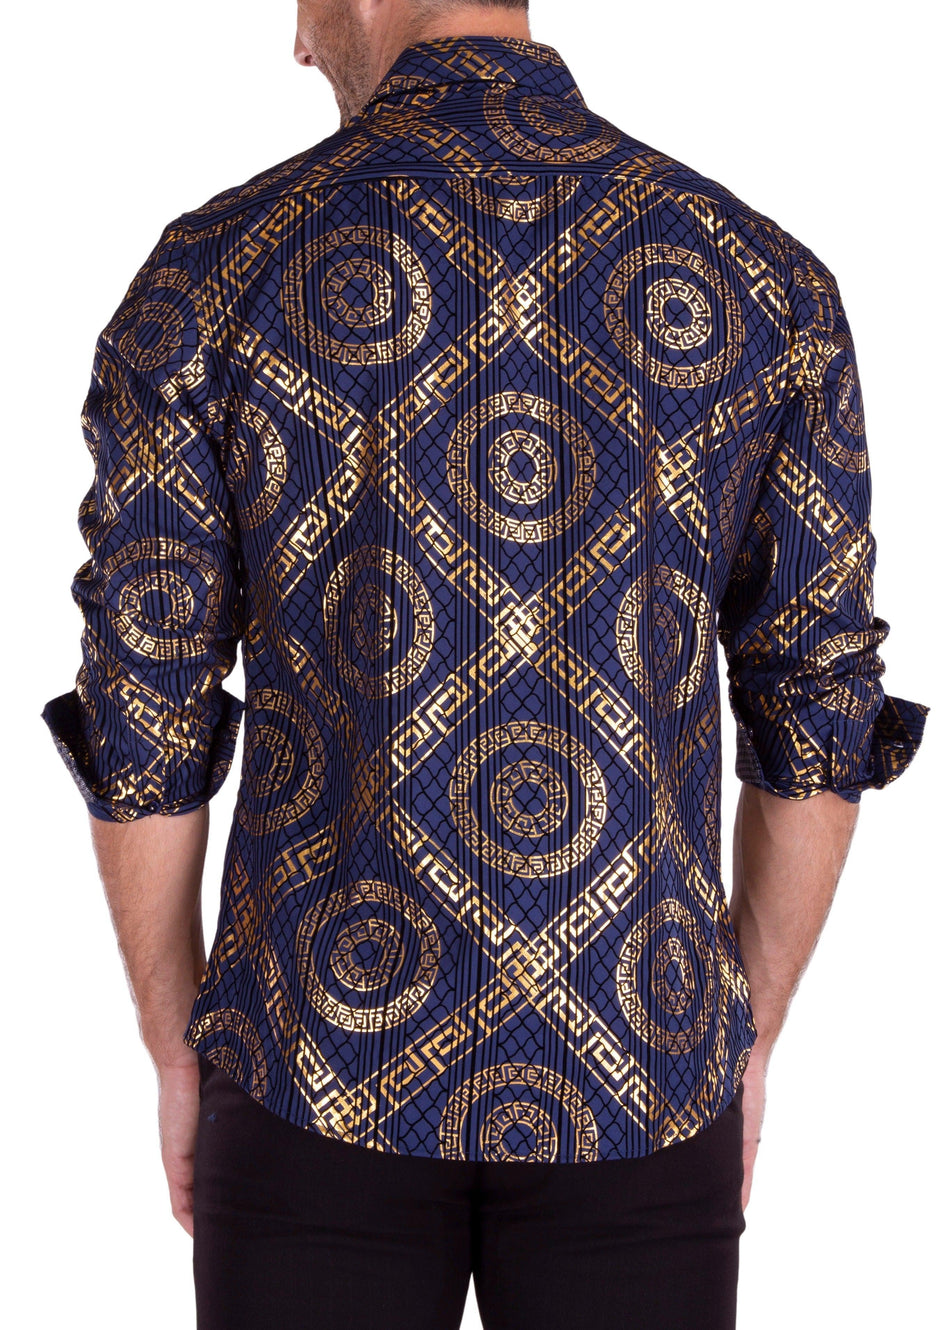 Greek Key Maze Velvet Texture Long Sleeve Dress Shirt Navy 